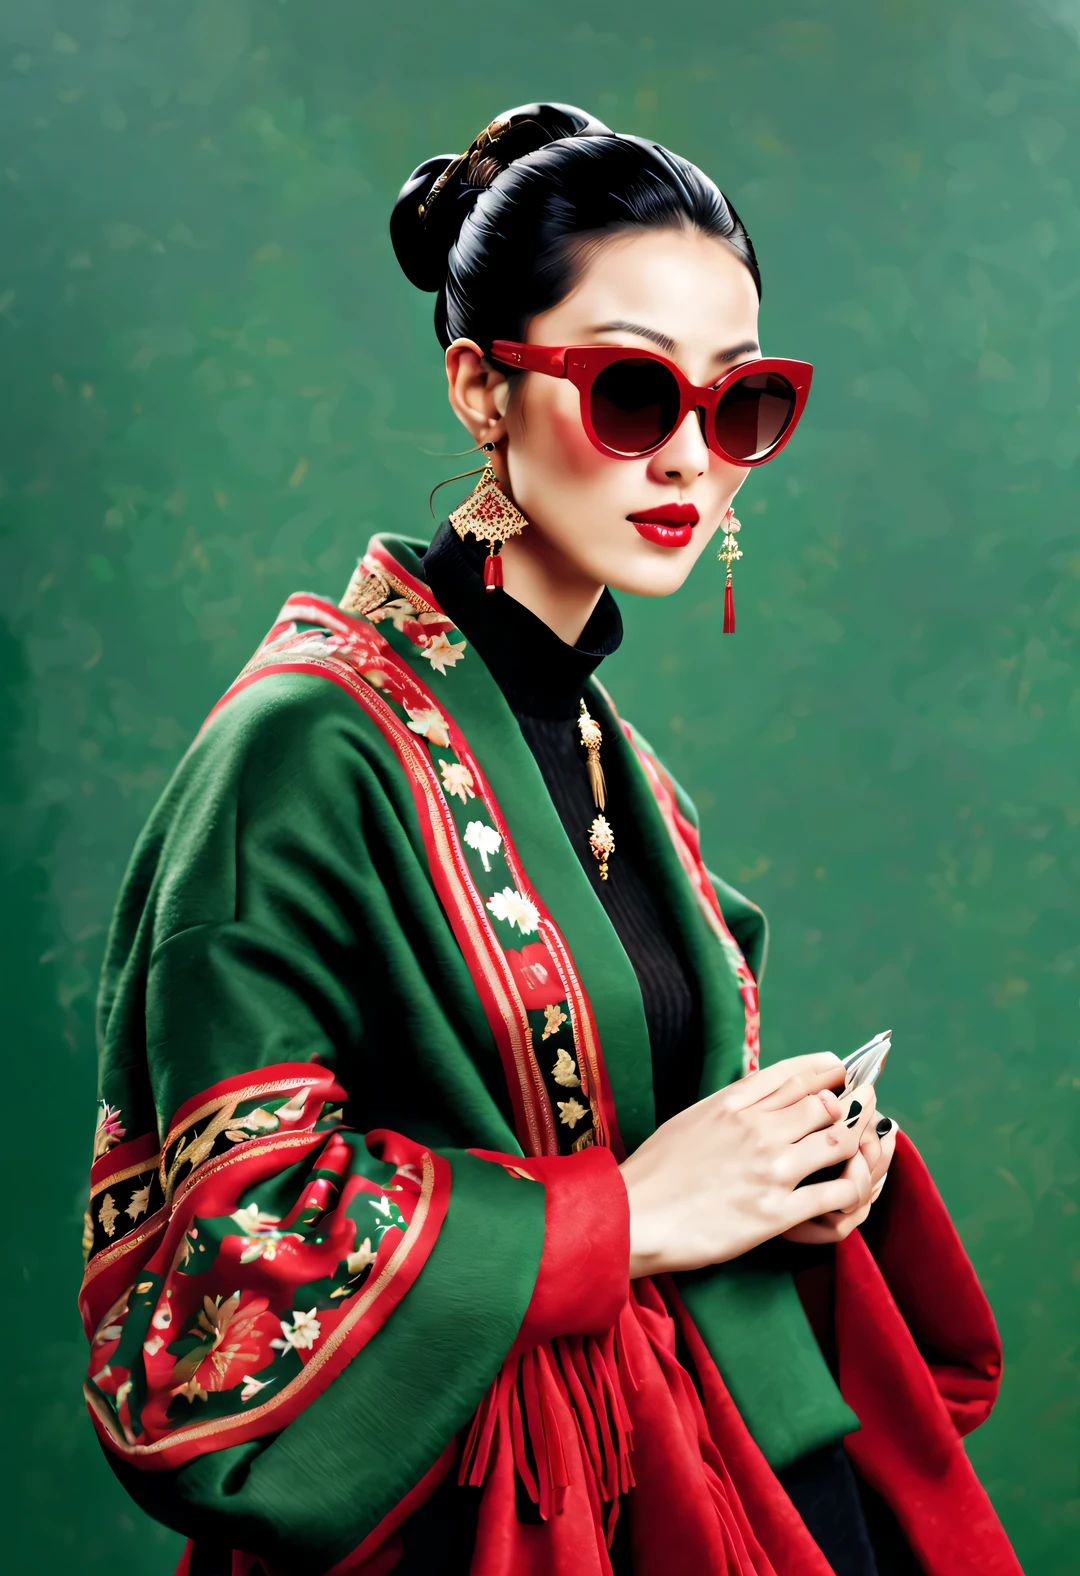 (현대 미술 패션 캐릭터 디자인), 매우 통일된 CG, (절반 길이 클로즈업), 떨어지는 눈 배경, 강설량,
(아름다운 중국 여자，온화한 미소로，두 손을 모아 기도하다), (과장된 빨간색 넓은 모직 스카프가 얼굴의 절반을 덮었습니다.: 1.1), (짙은 녹색 스웨터와 재킷: 1.1), (검은 색 선글라스를 착용，머리를 롤빵으로 빗어주세요: 1.2), 클래식과 모던의 조화로운 조화, 소녀의 뽀얗고 결점 없이 매끈한 피부, 하이 노즈 브릿지, 머리를 든 자세, 슬프면서도 아름답다, 날씬한 몸매, 절묘한 얼굴 특징, 소용돌이 치는 안개 그림, 수묵화, 흑발, 미트볼, 자랑스러운, 초현실주의, 현대 미술 사진, 액션 페인팅 일러스트레이션, 추상 표현주의, 픽사, 피사계 심도, 모션 블러, 백라이트, 방사능, 감소, 헤드업 각도, 소니 FE 총괄 매니저, 초고화질, 걸작, 정확한, 질감 있는 피부, 슈퍼 디테일, 높은 디테일, 고품질, 수상 경력이 있는, 최고의 품질, 수준, 16,000, 상향식 관점에서 촬영, 흥미로운,